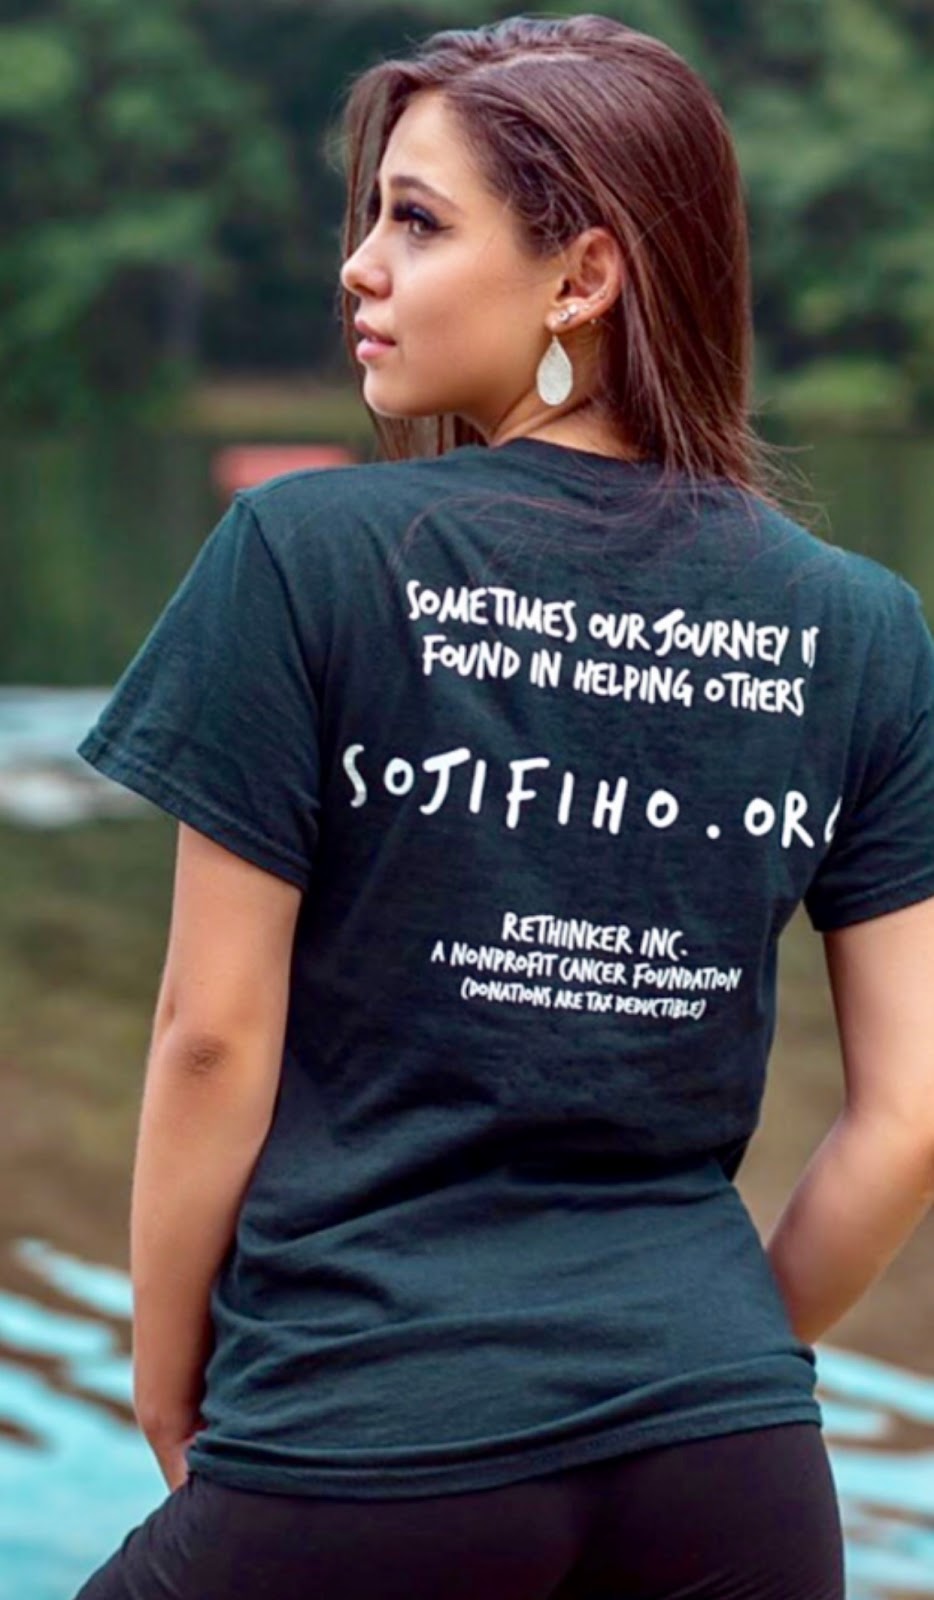 Sojifiho (Rethinker, Inc. Nonprofit Cancer Foundation) | 171 Figurea Ave, Staten Island, NY 10312 | Phone: (917) 216-4630